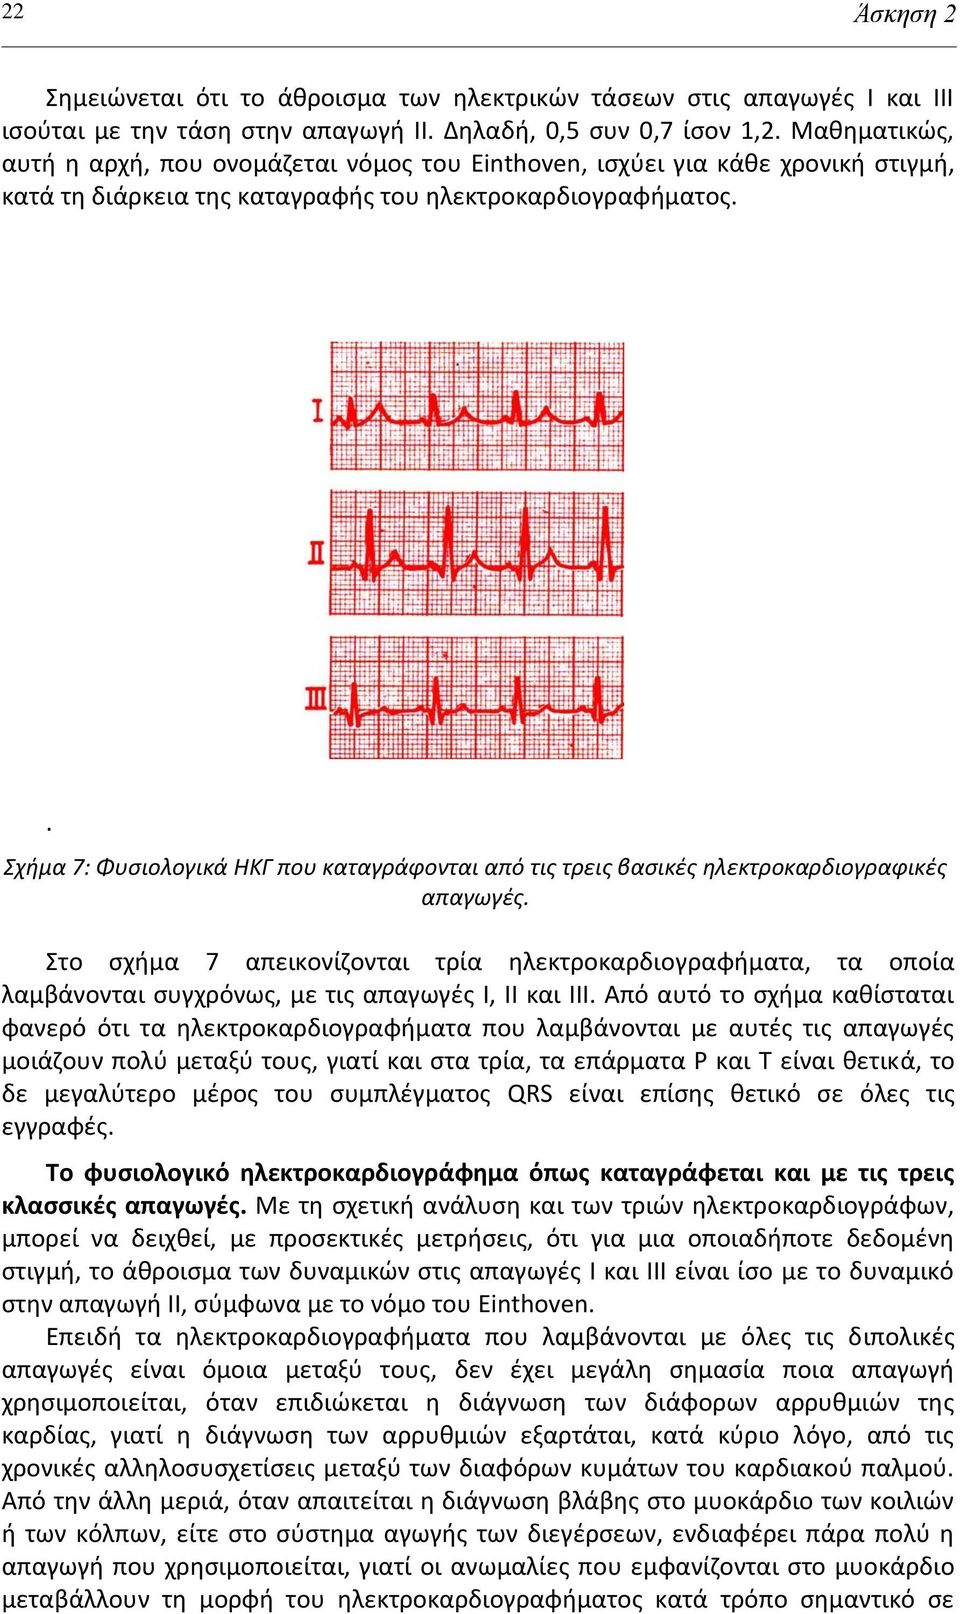 . Σχήμα 7: Φυςιολογικά ΗΚΓ που καταγράφονται από τισ τρεισ βαςικζσ ηλεκτροκαρδιογραφικζσ απαγωγζσ.